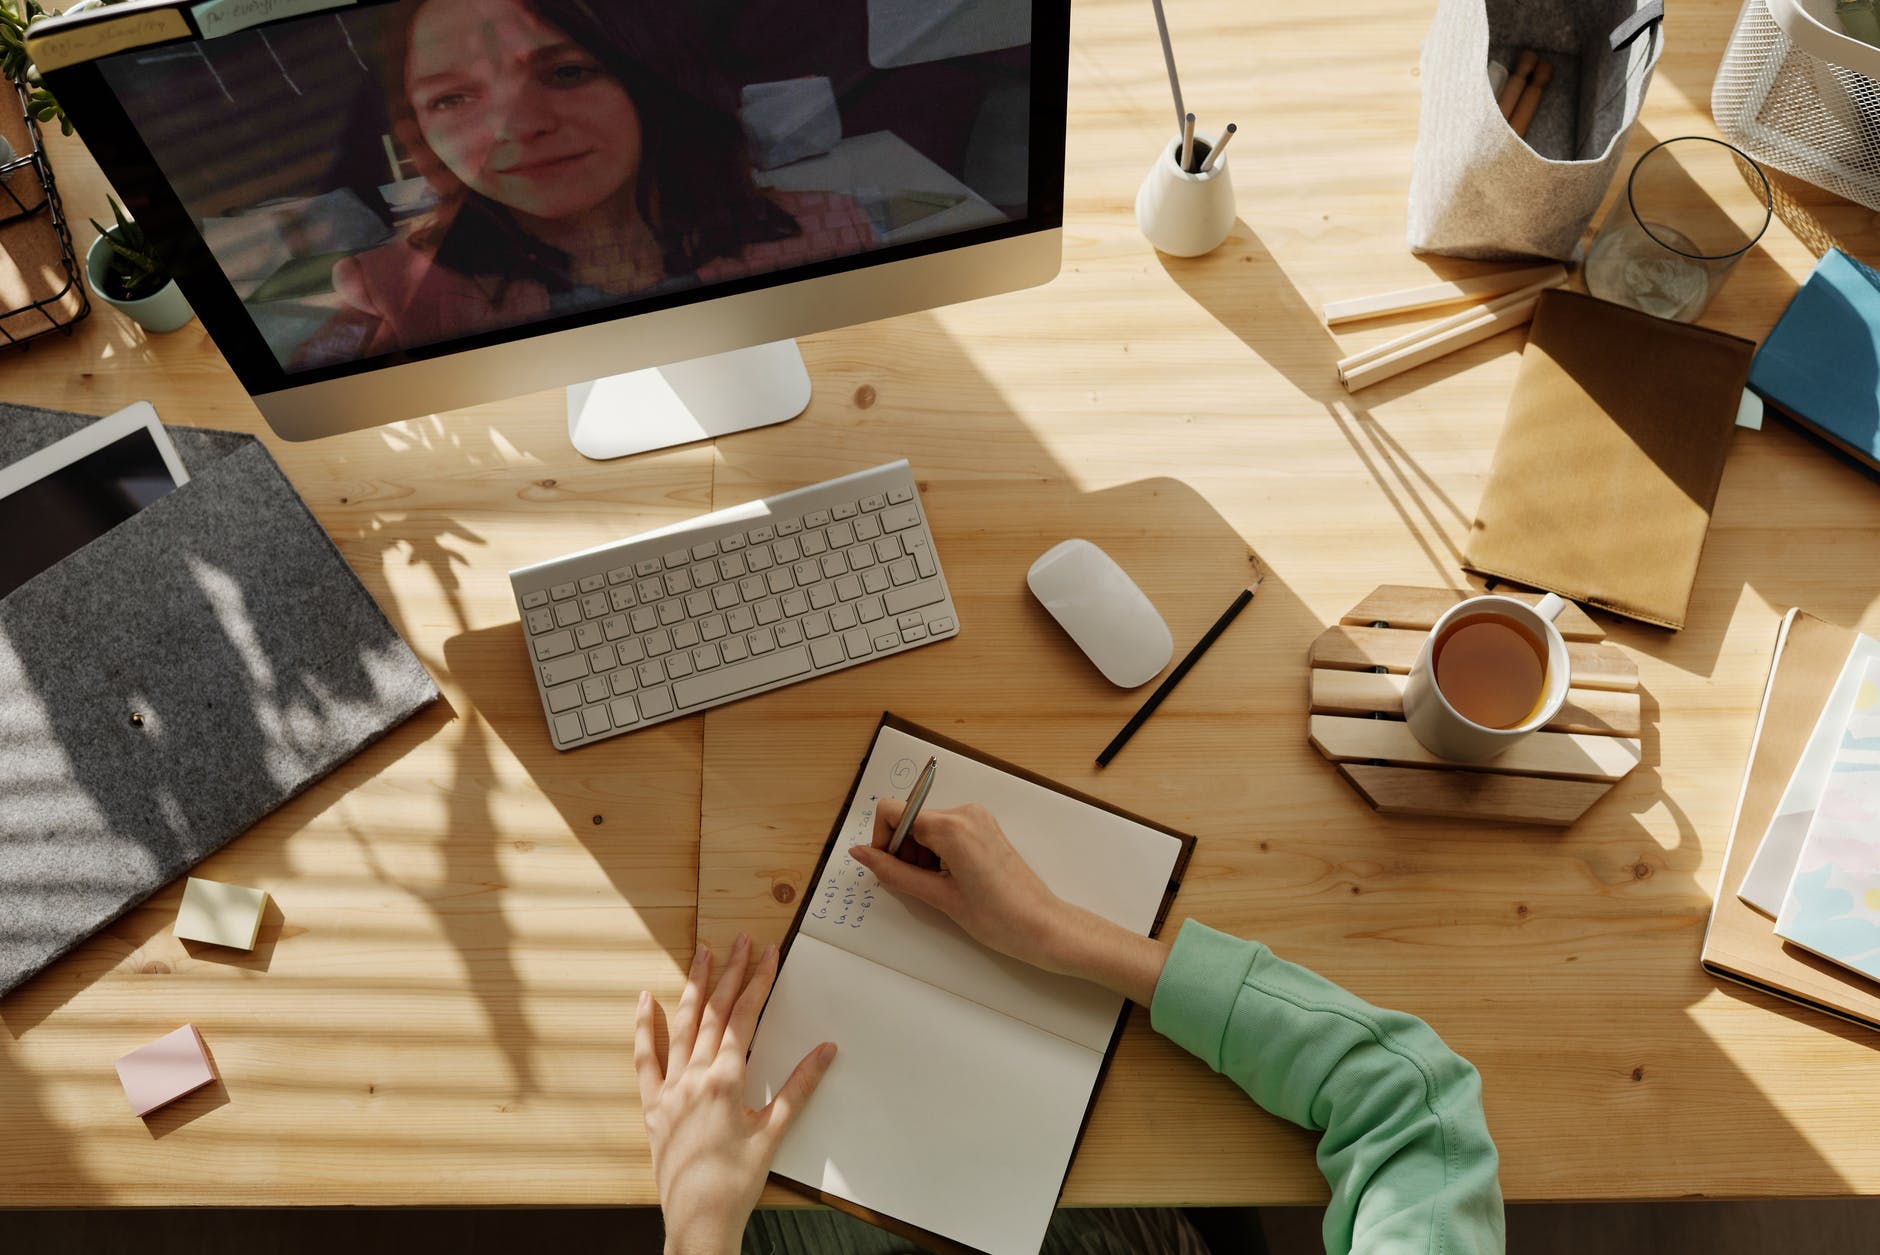 图片展示一位正在书桌前工作的人，电脑屏幕上有另一位女士的图像，桌面上散落着办公用品和一杯咖啡。